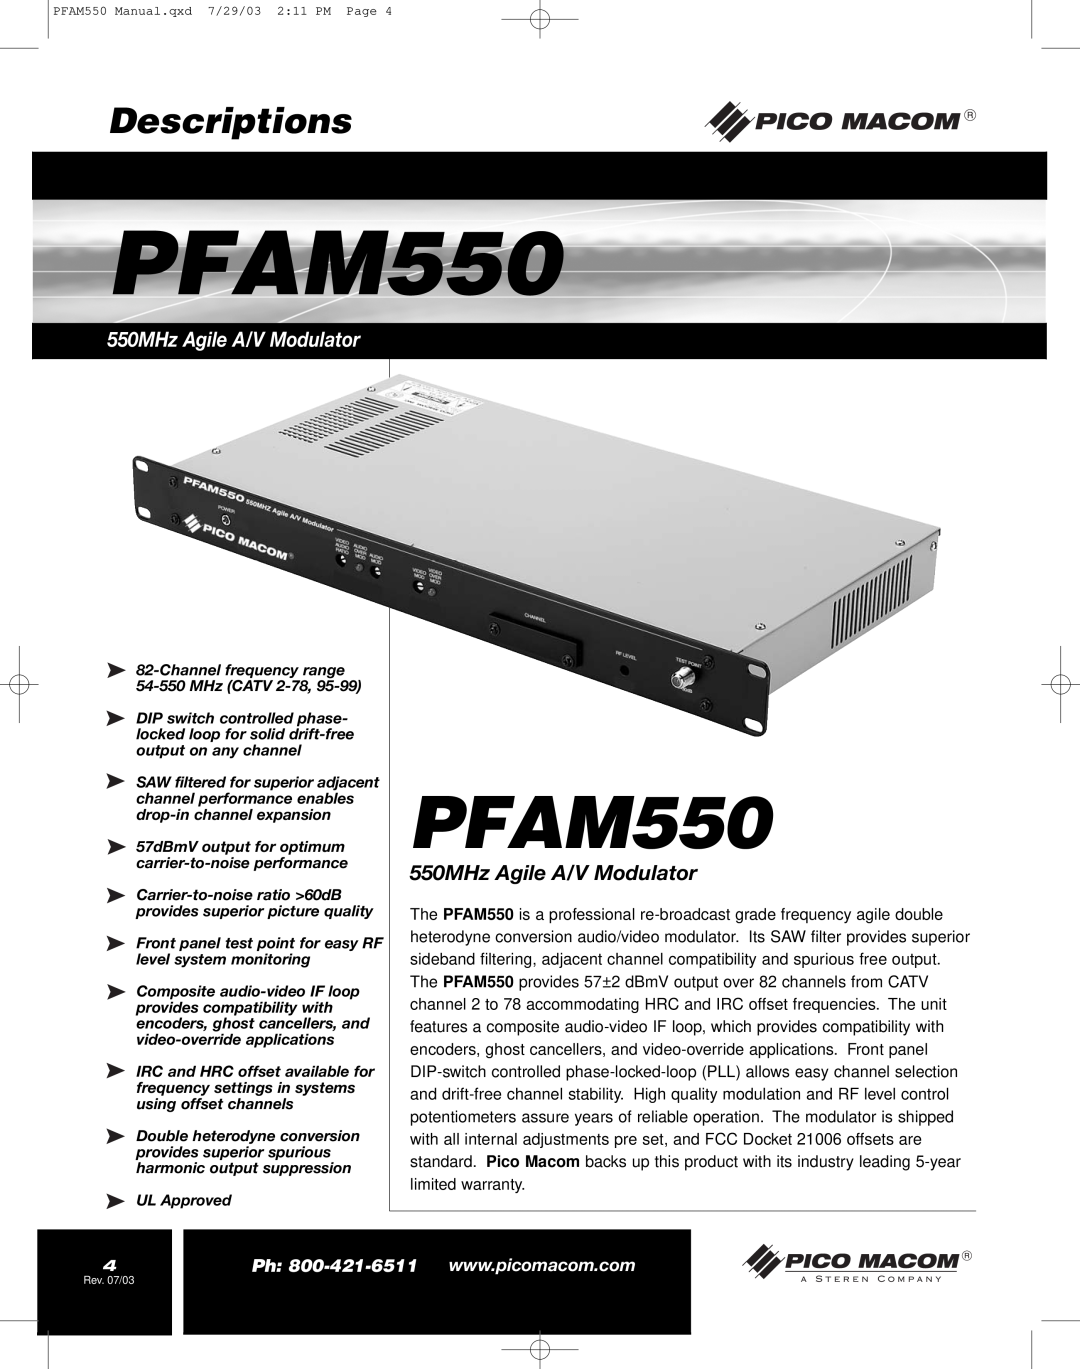 Pico Macom PFAM550 operation manual Descriptions, 550MHz Agile A/V Modulator 